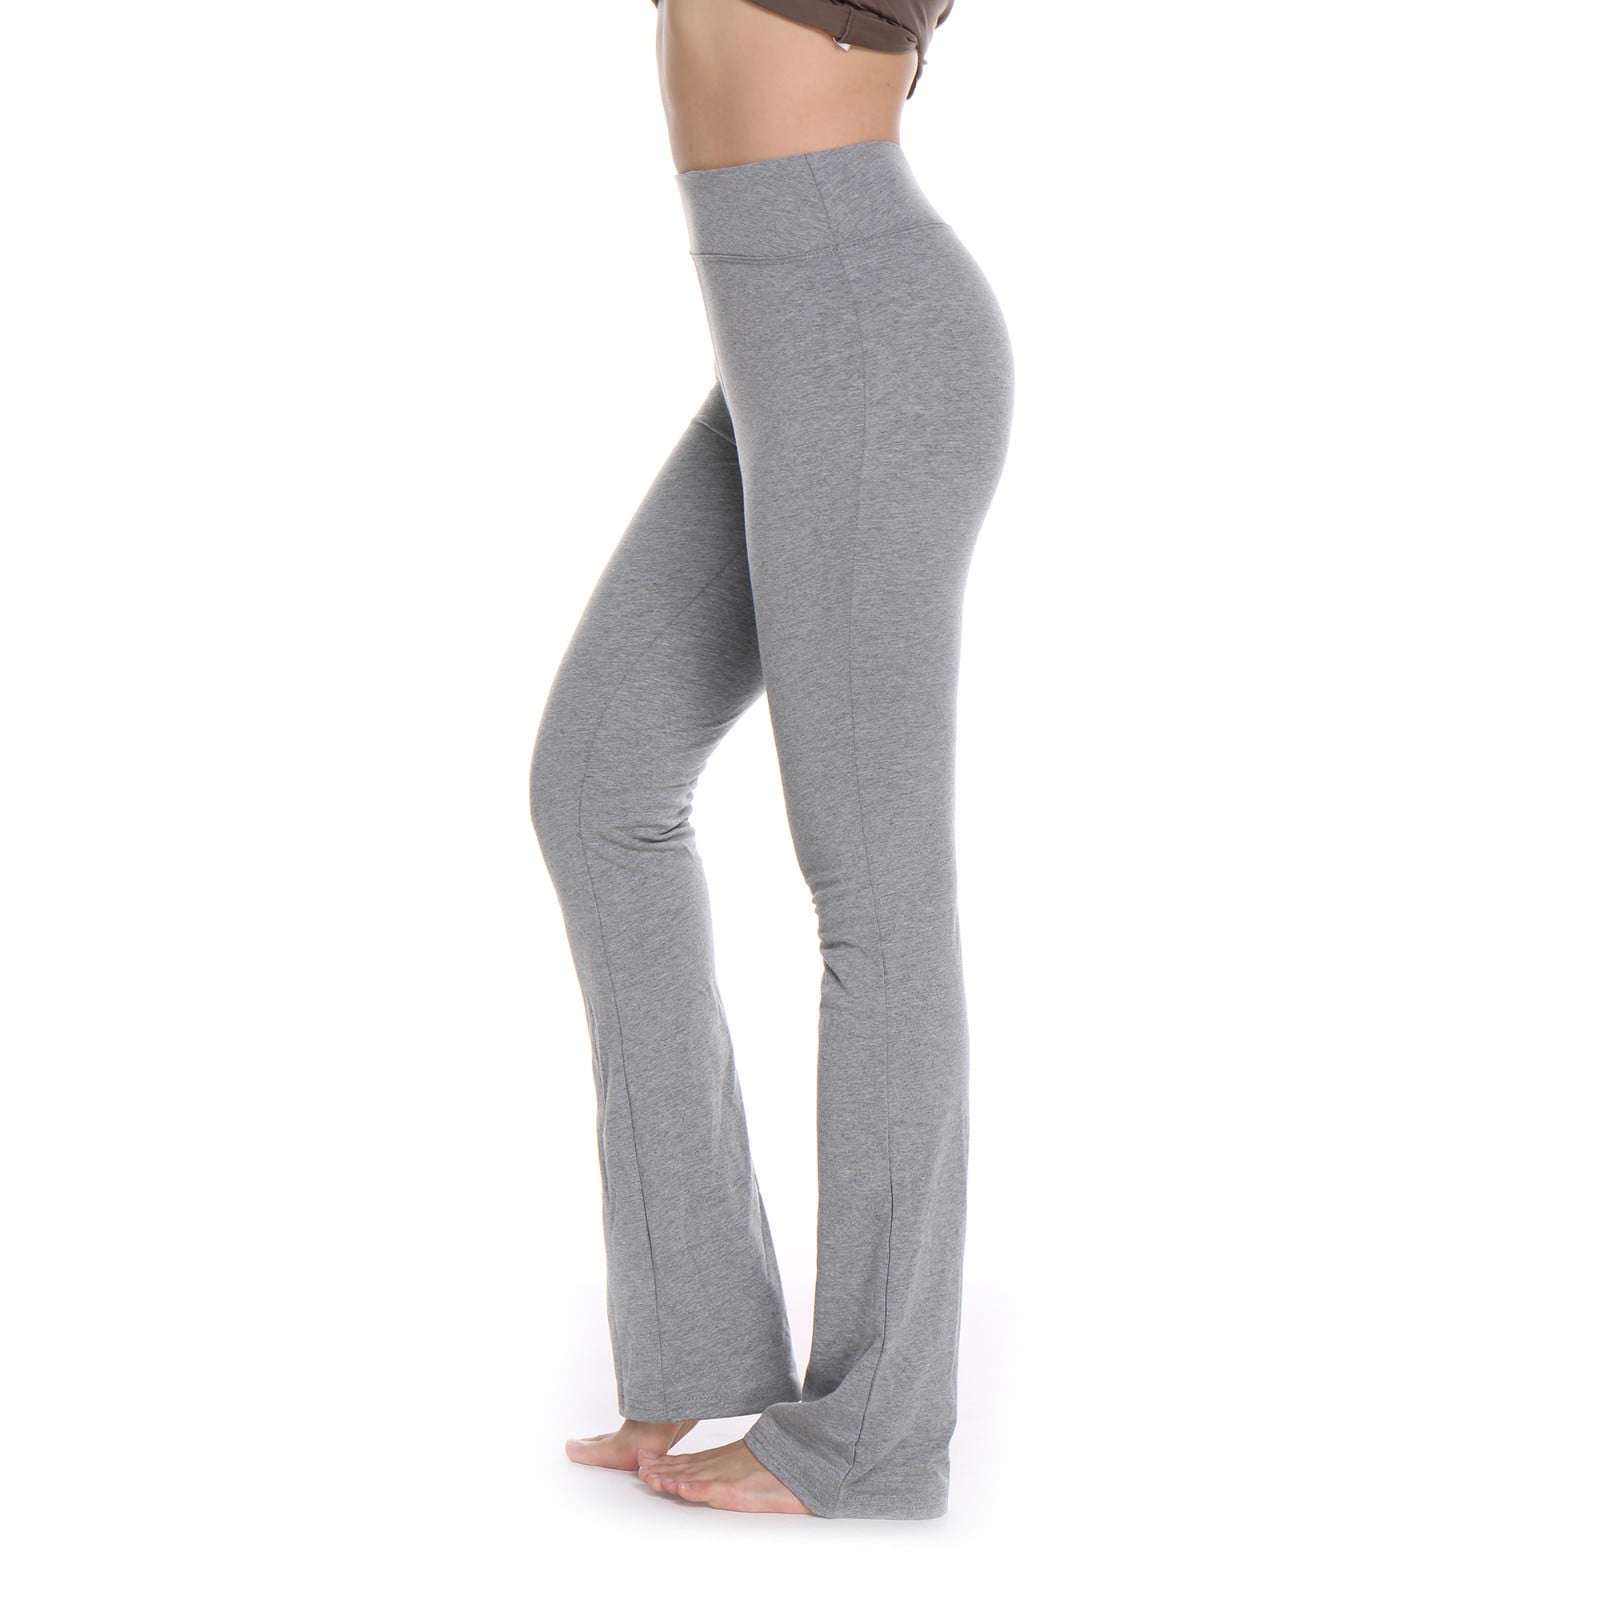 FITTOO Women Boot cut Yoga Pants High 